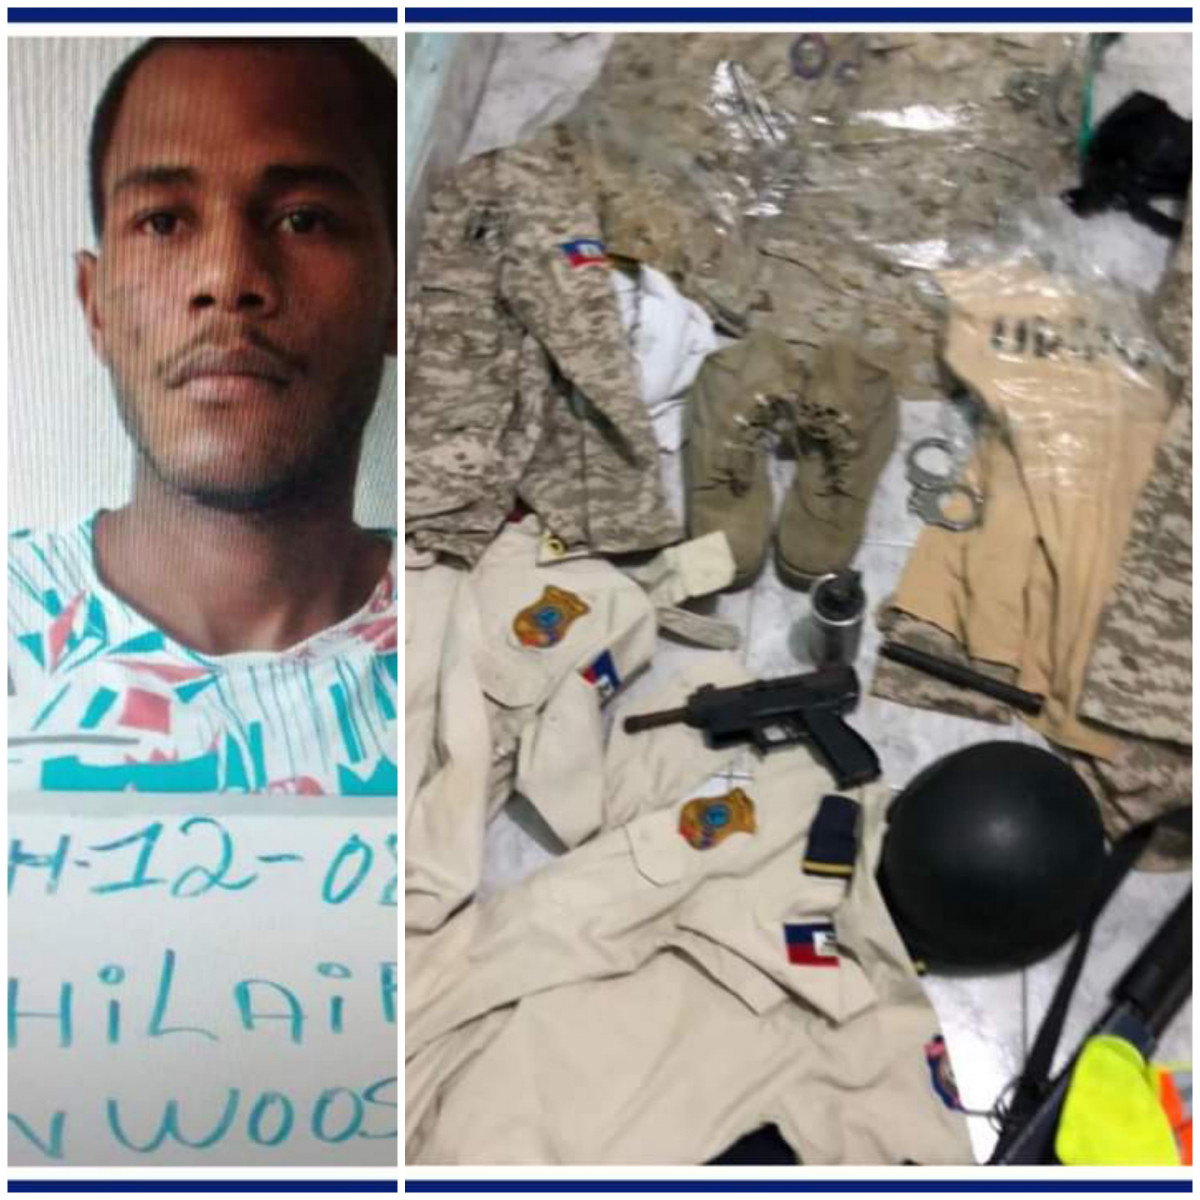 Fusil, uniformes et autres matériels de la PNH découverts chez un ancien policier